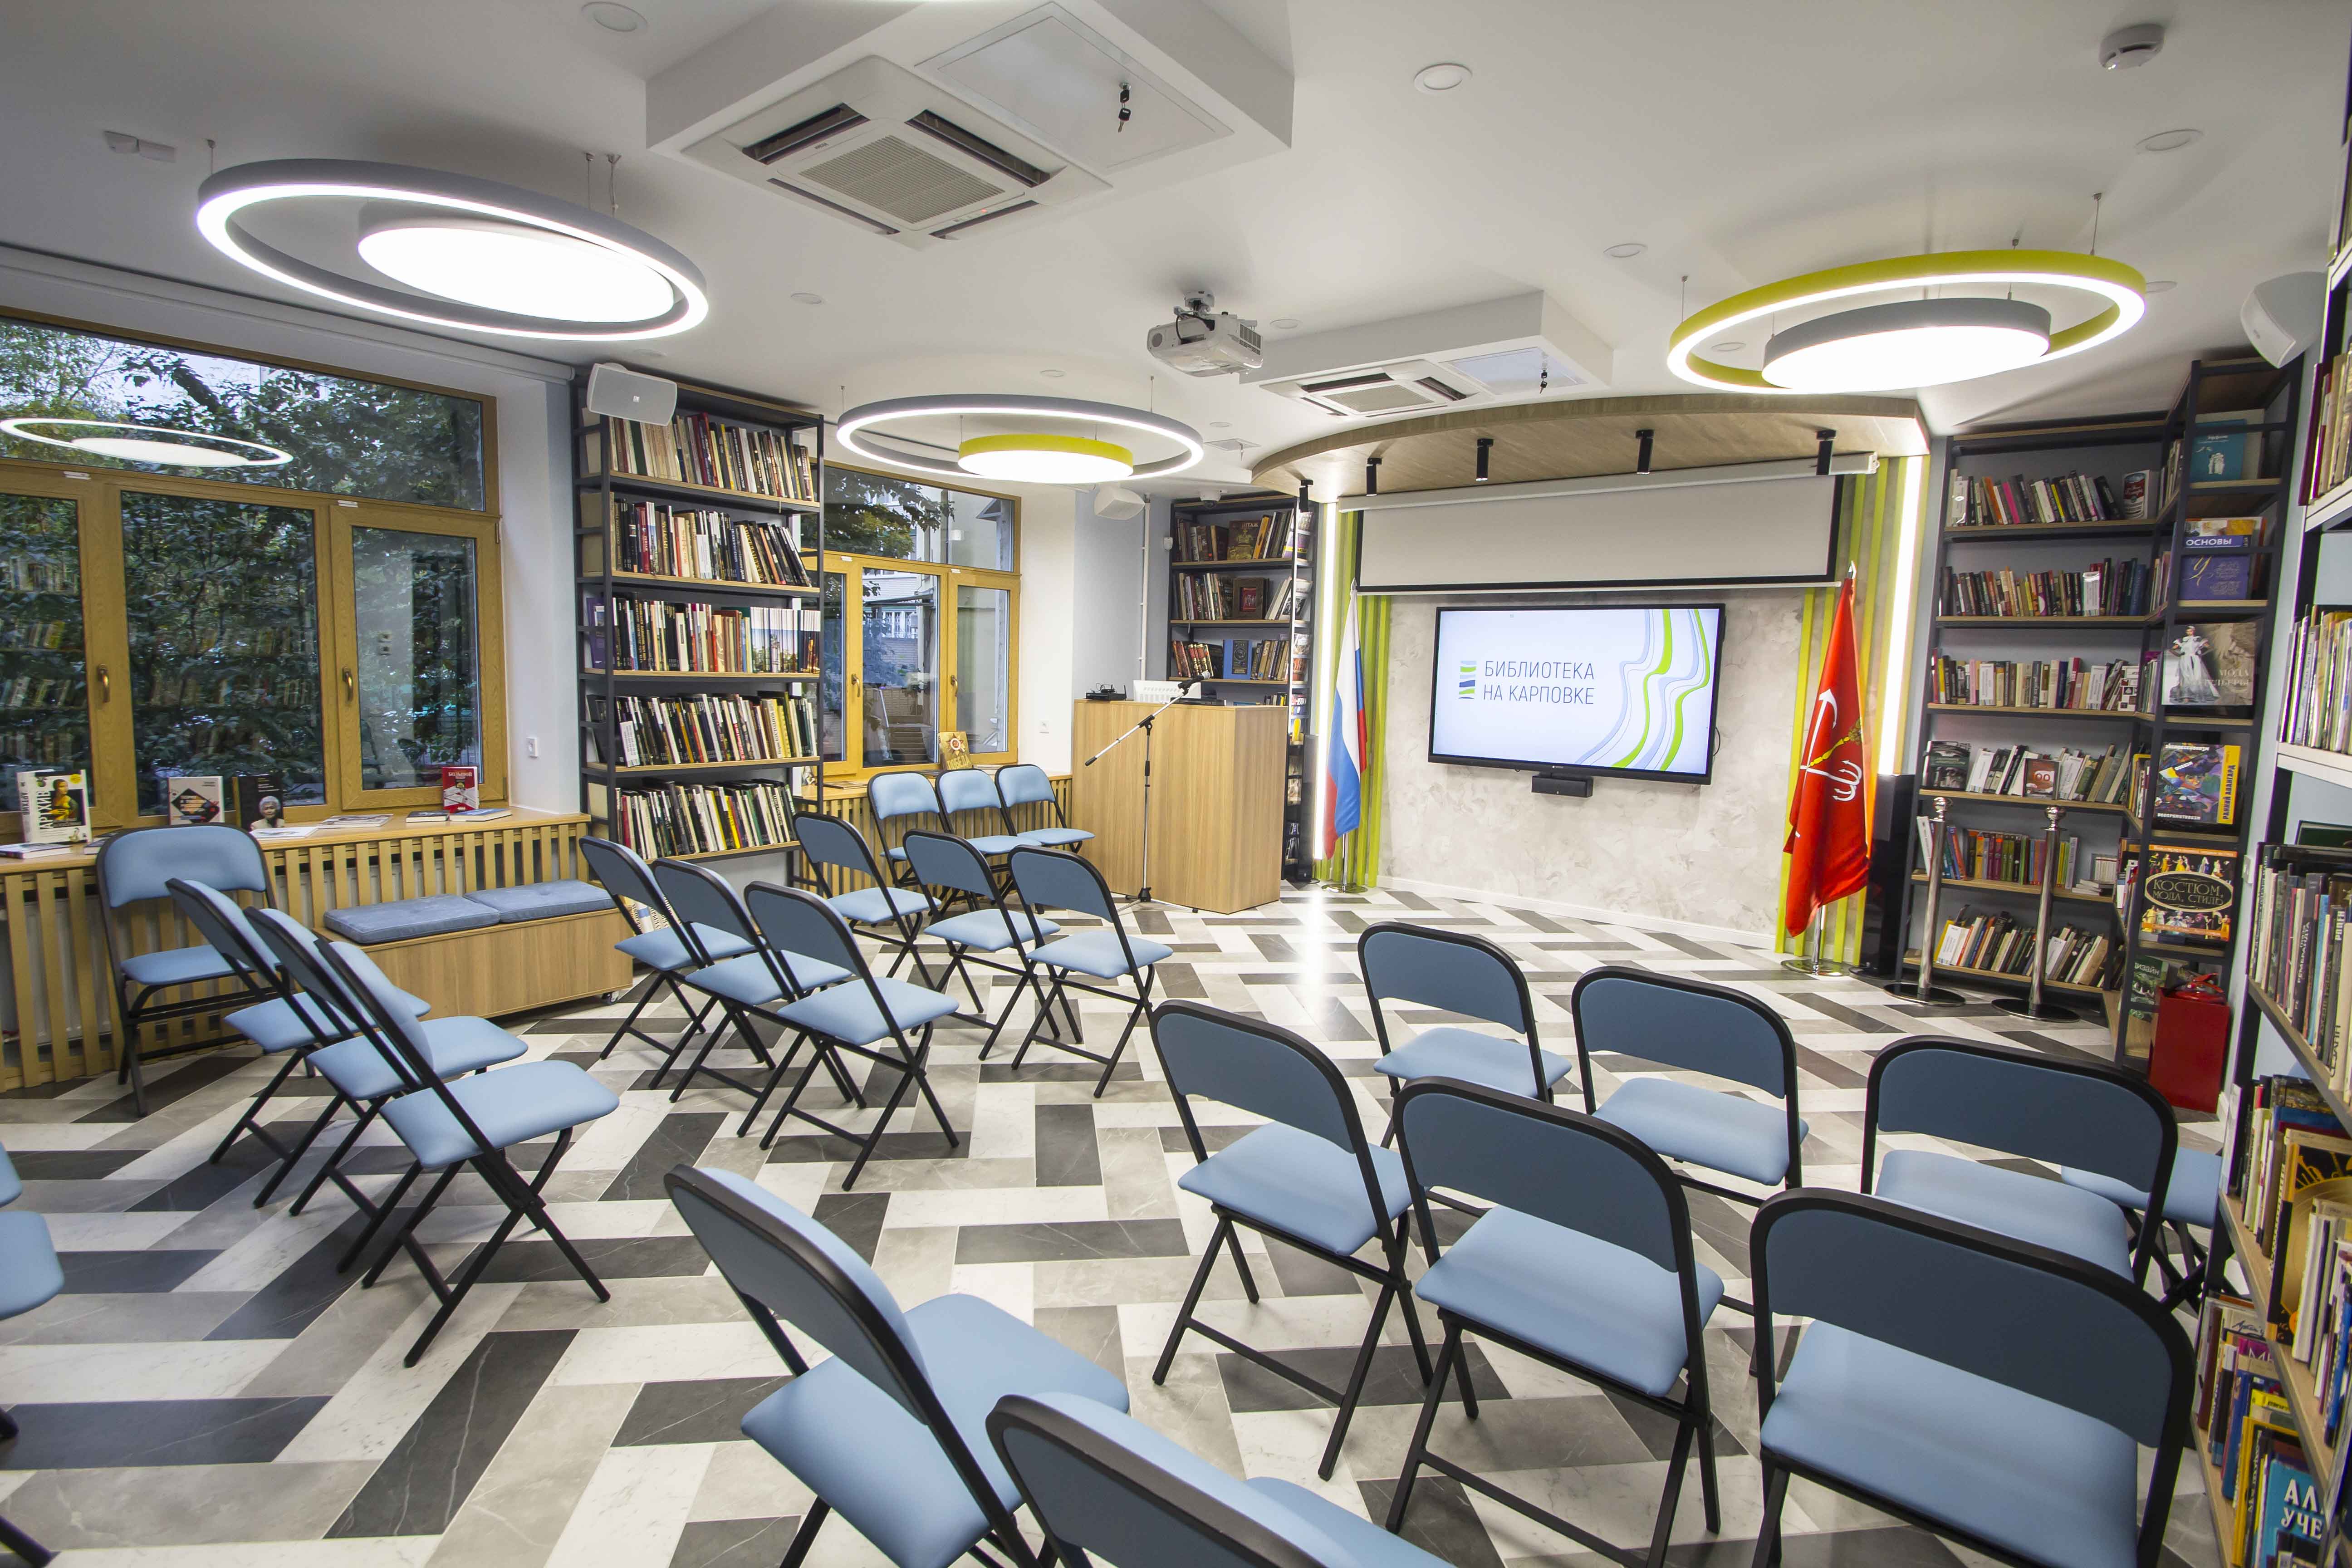  Библиотека на Карповке - это очередной проект модернизации библиотечного пространства на Петроградской стороне. 